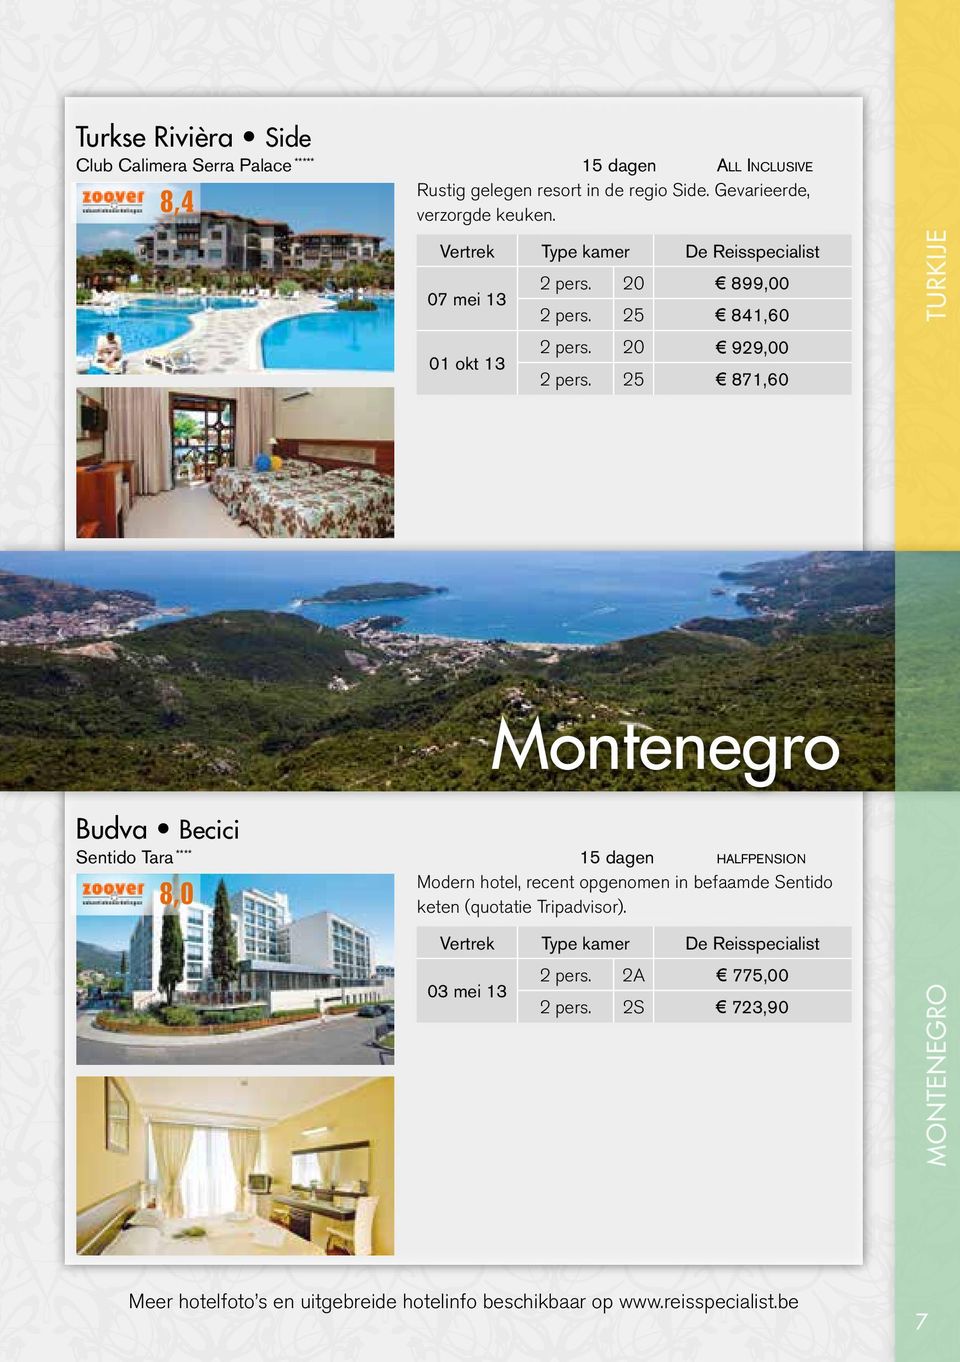 Montenegro Budva Becici 8,0 halfpension Modern hotel, recent opgenomen in befaamde Sentido keten (quotatie